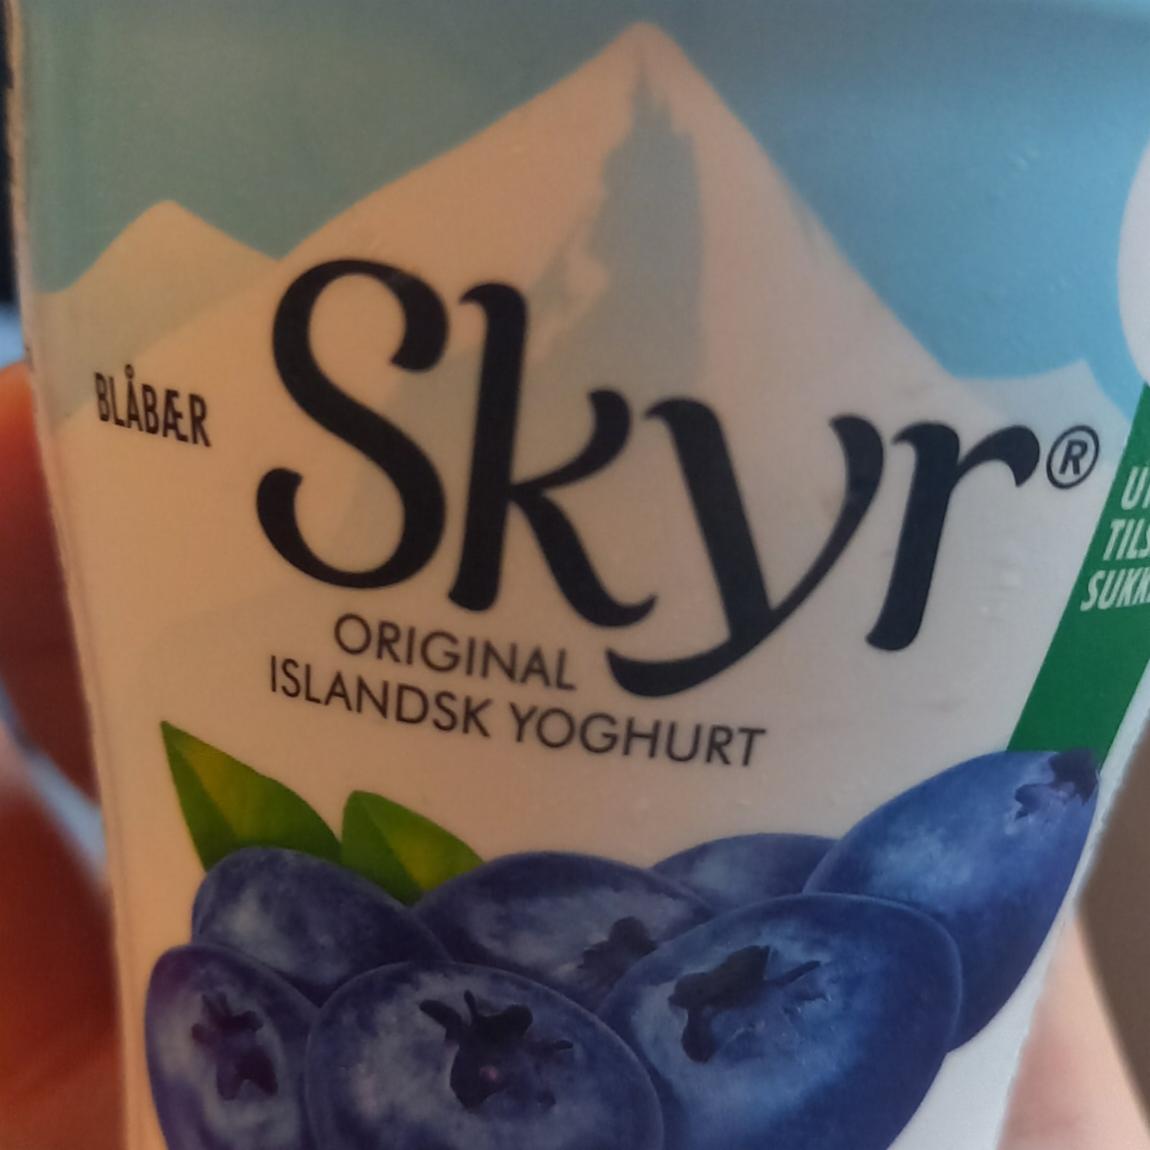 Фото - оригинальный исландский йогурт с черникой Blabaer SKYR